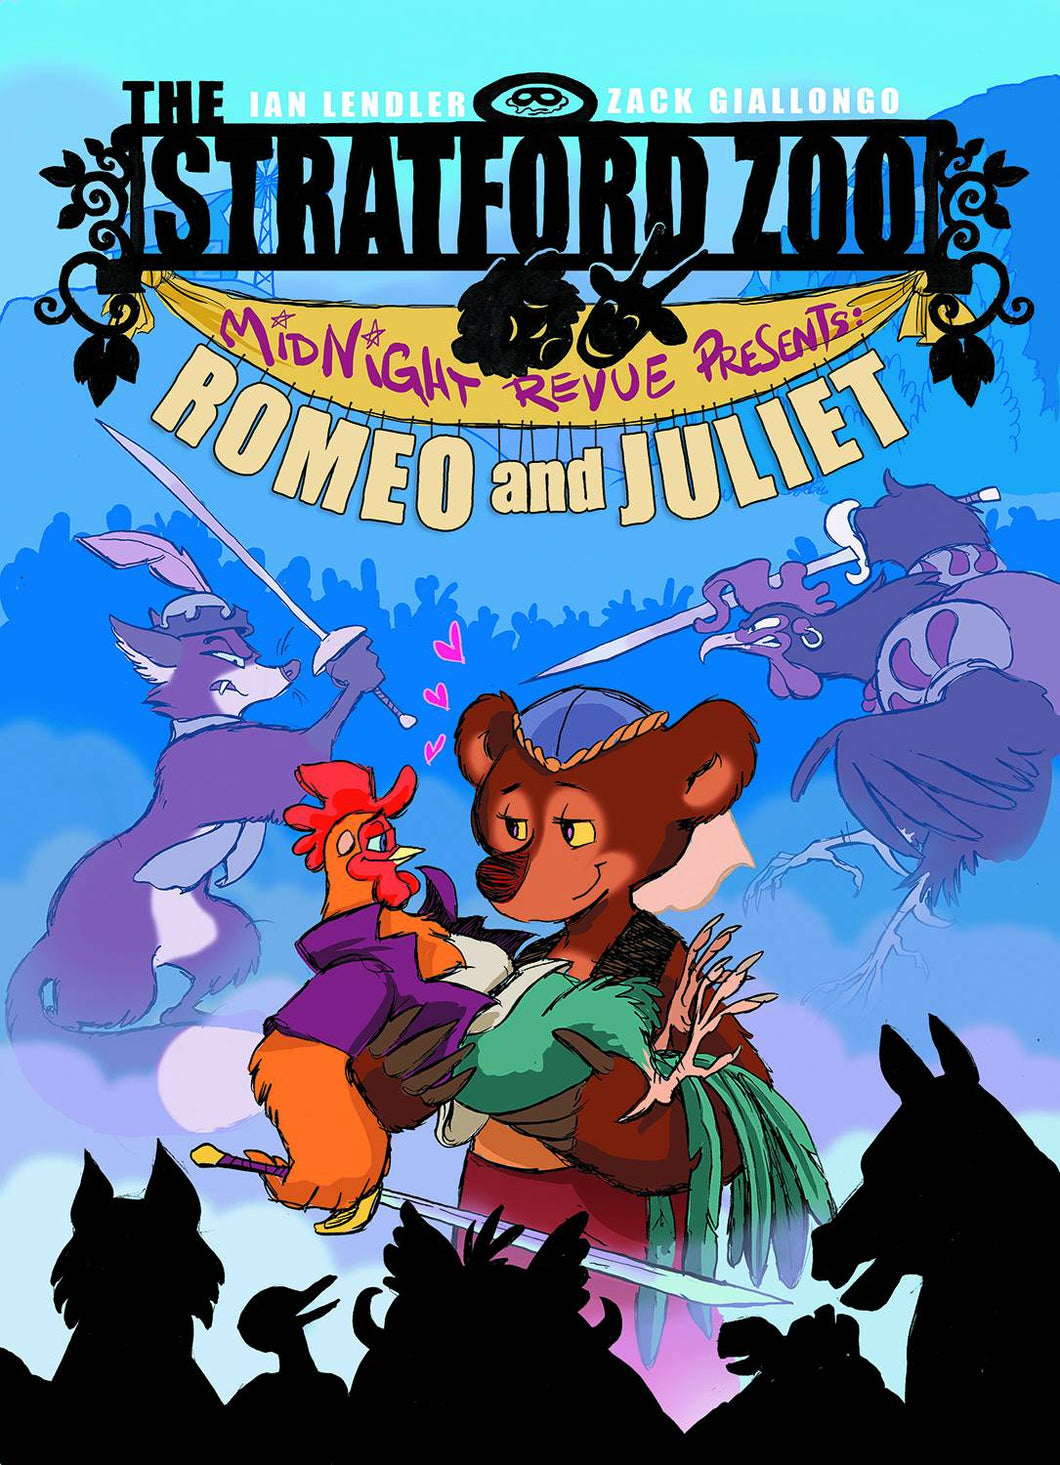 Stratford Zoo Midnight Revue Presents Romeo & Juliet G